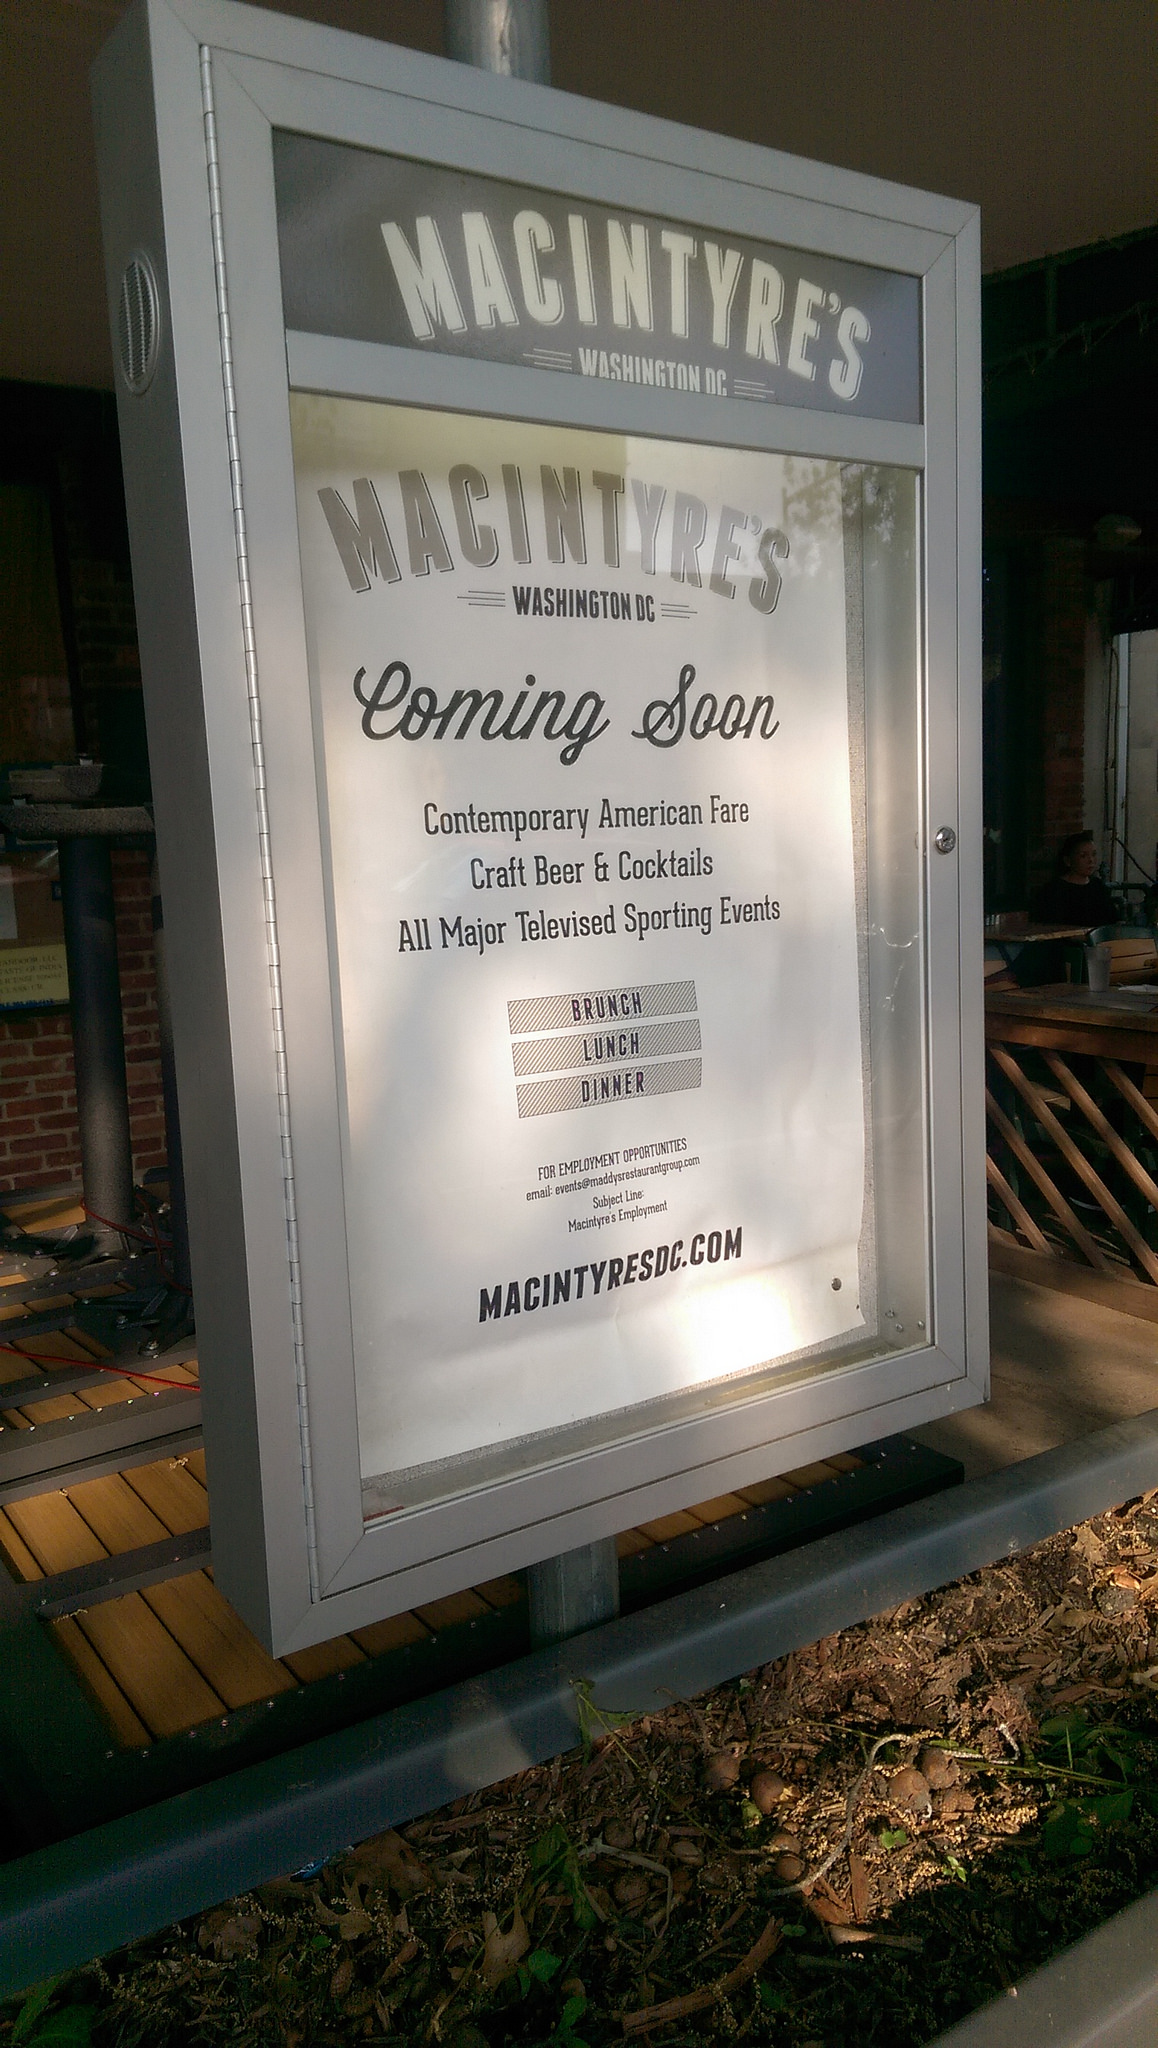 Coming soon: Macintyre's.